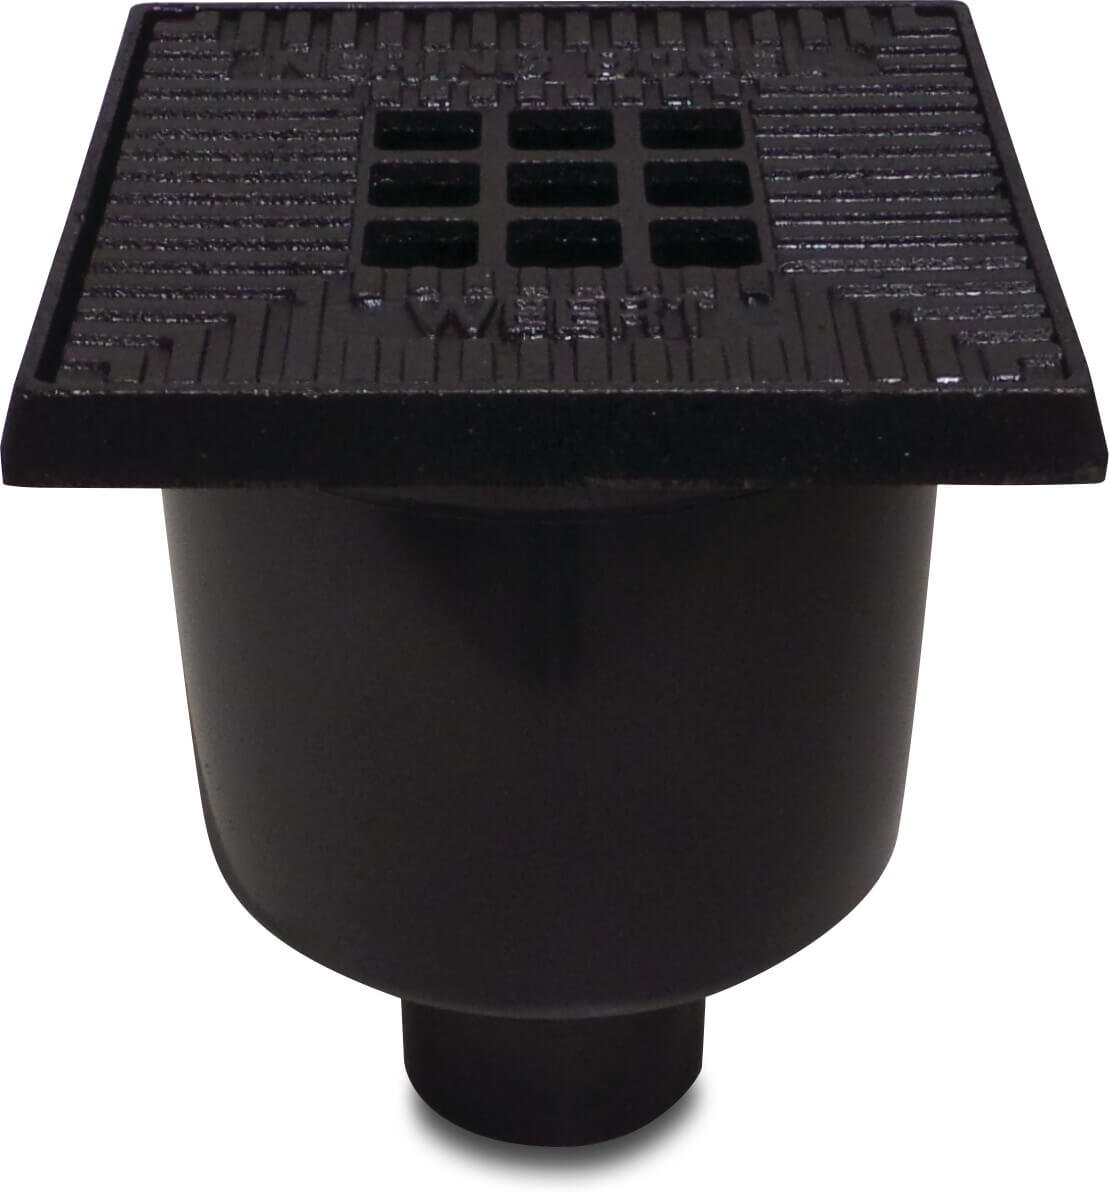 Vloerput kunststof 70/75 mm spie zwart onderaansluiting